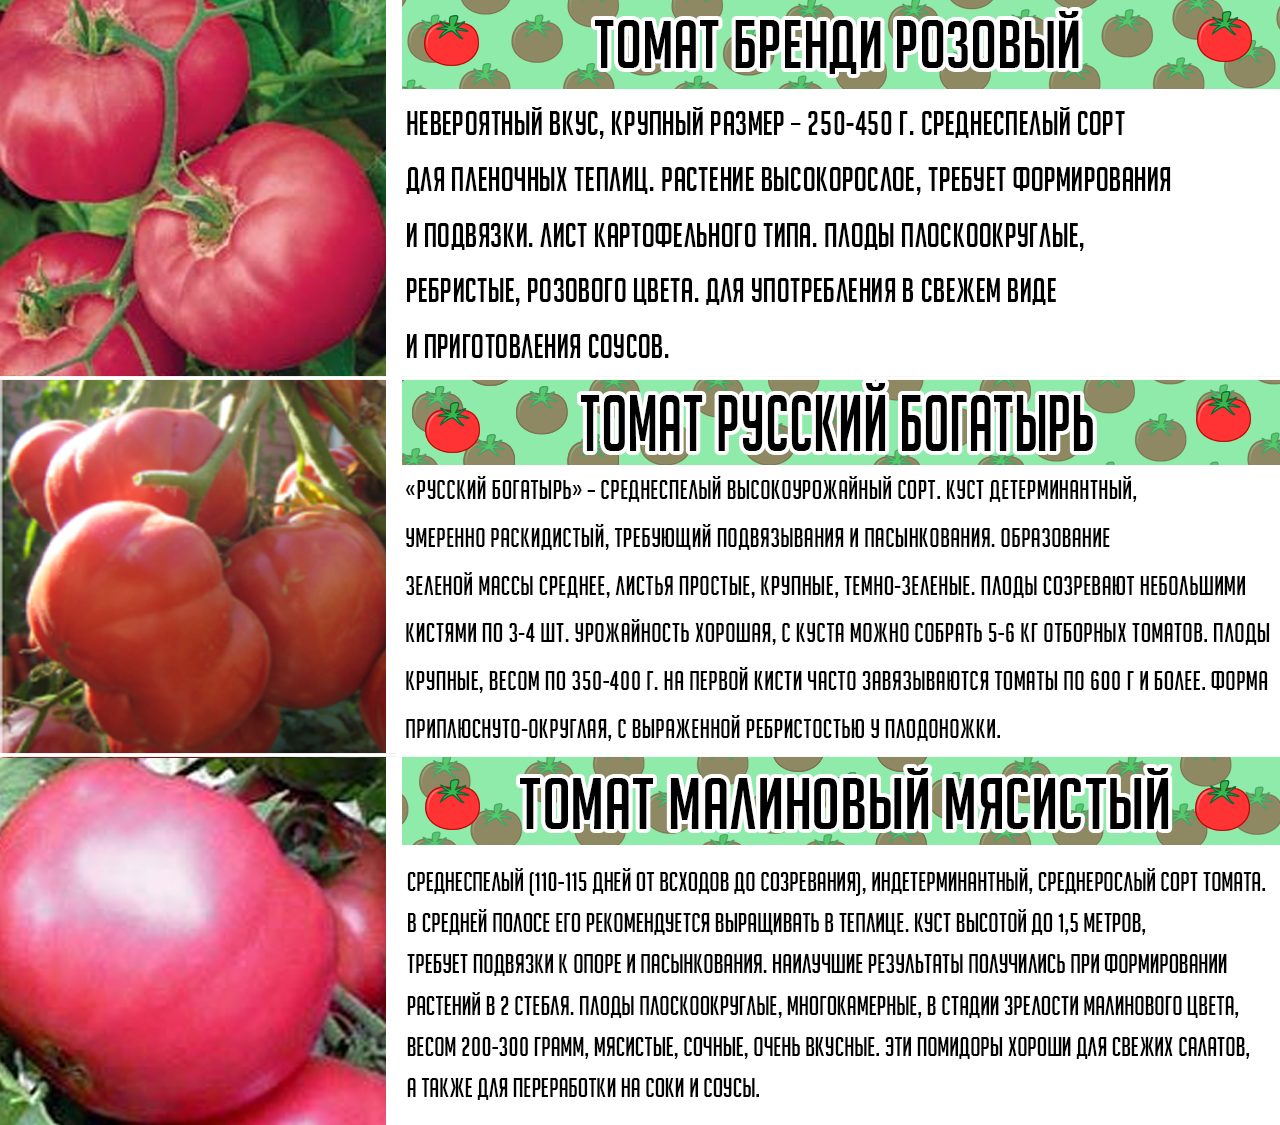 Сорт помидор "безрассадный": описание томатов, особенности ухода за почвой, полив, рассада, урожайность, характеристика плодов и подверженность вредителям русский фермер